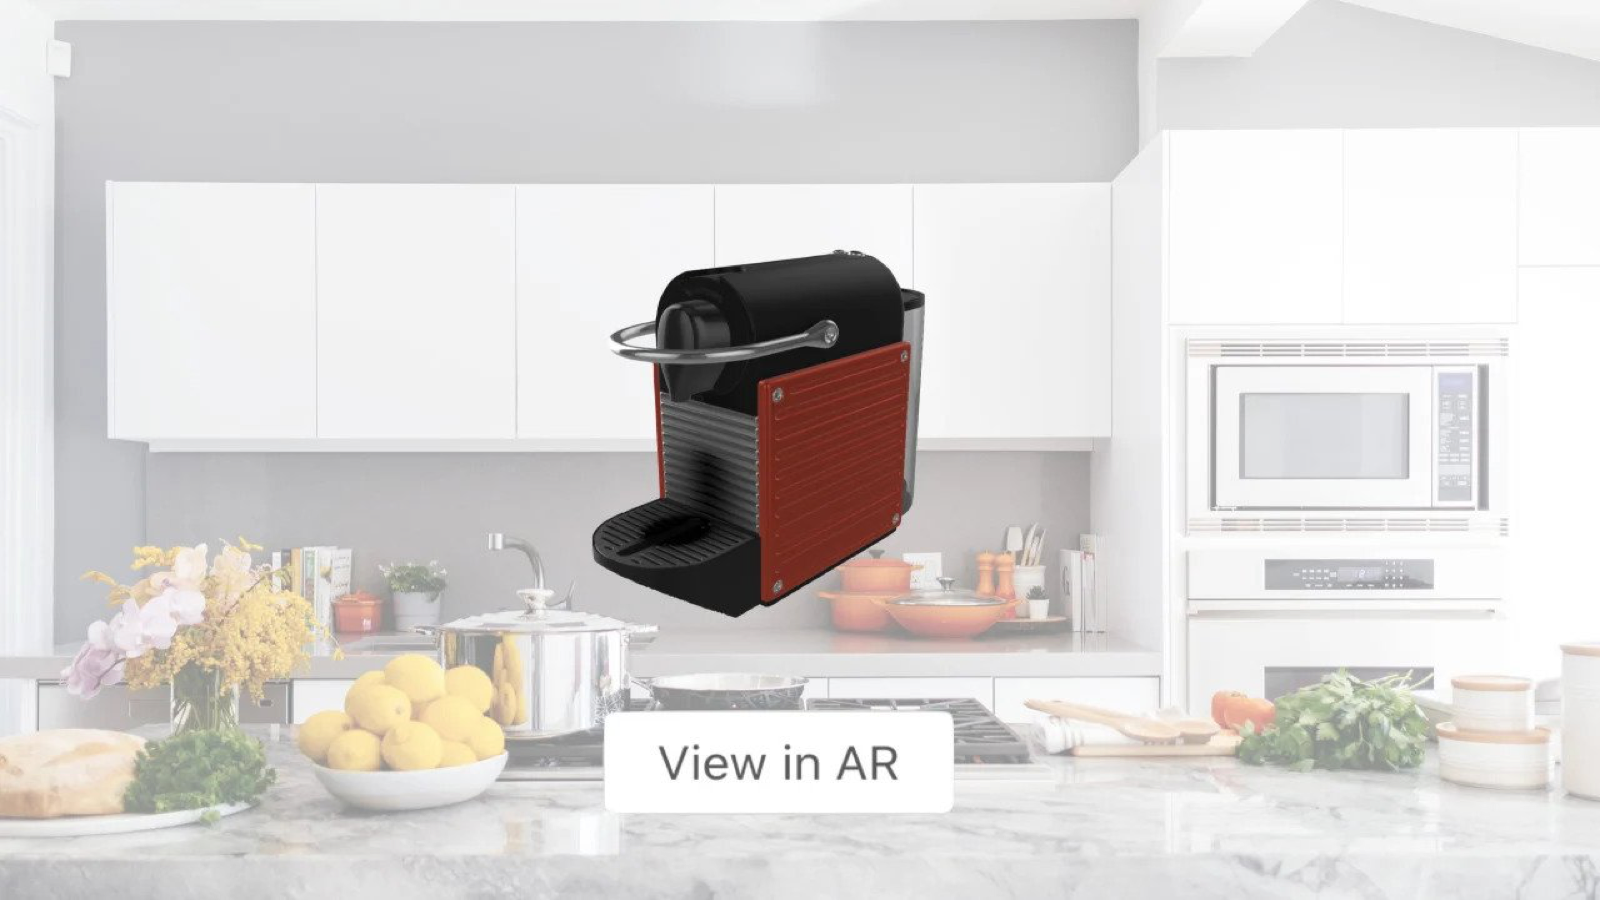 Gør det muligt for kunder at placere produkter i deres hjem med AR